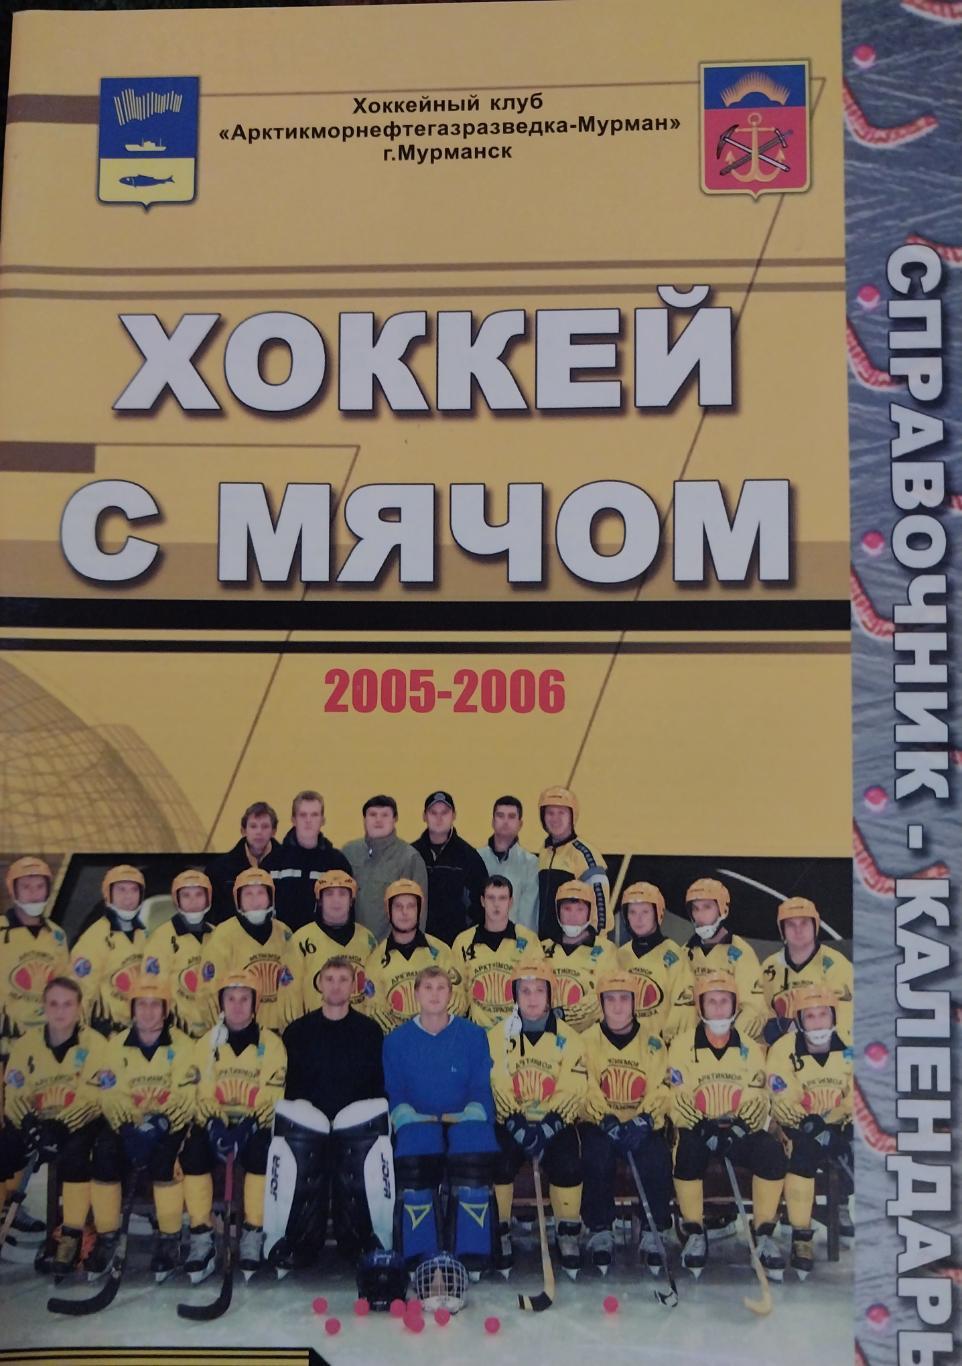 ХК Мурман, Мурманск 2005/06, хоккей с мячом